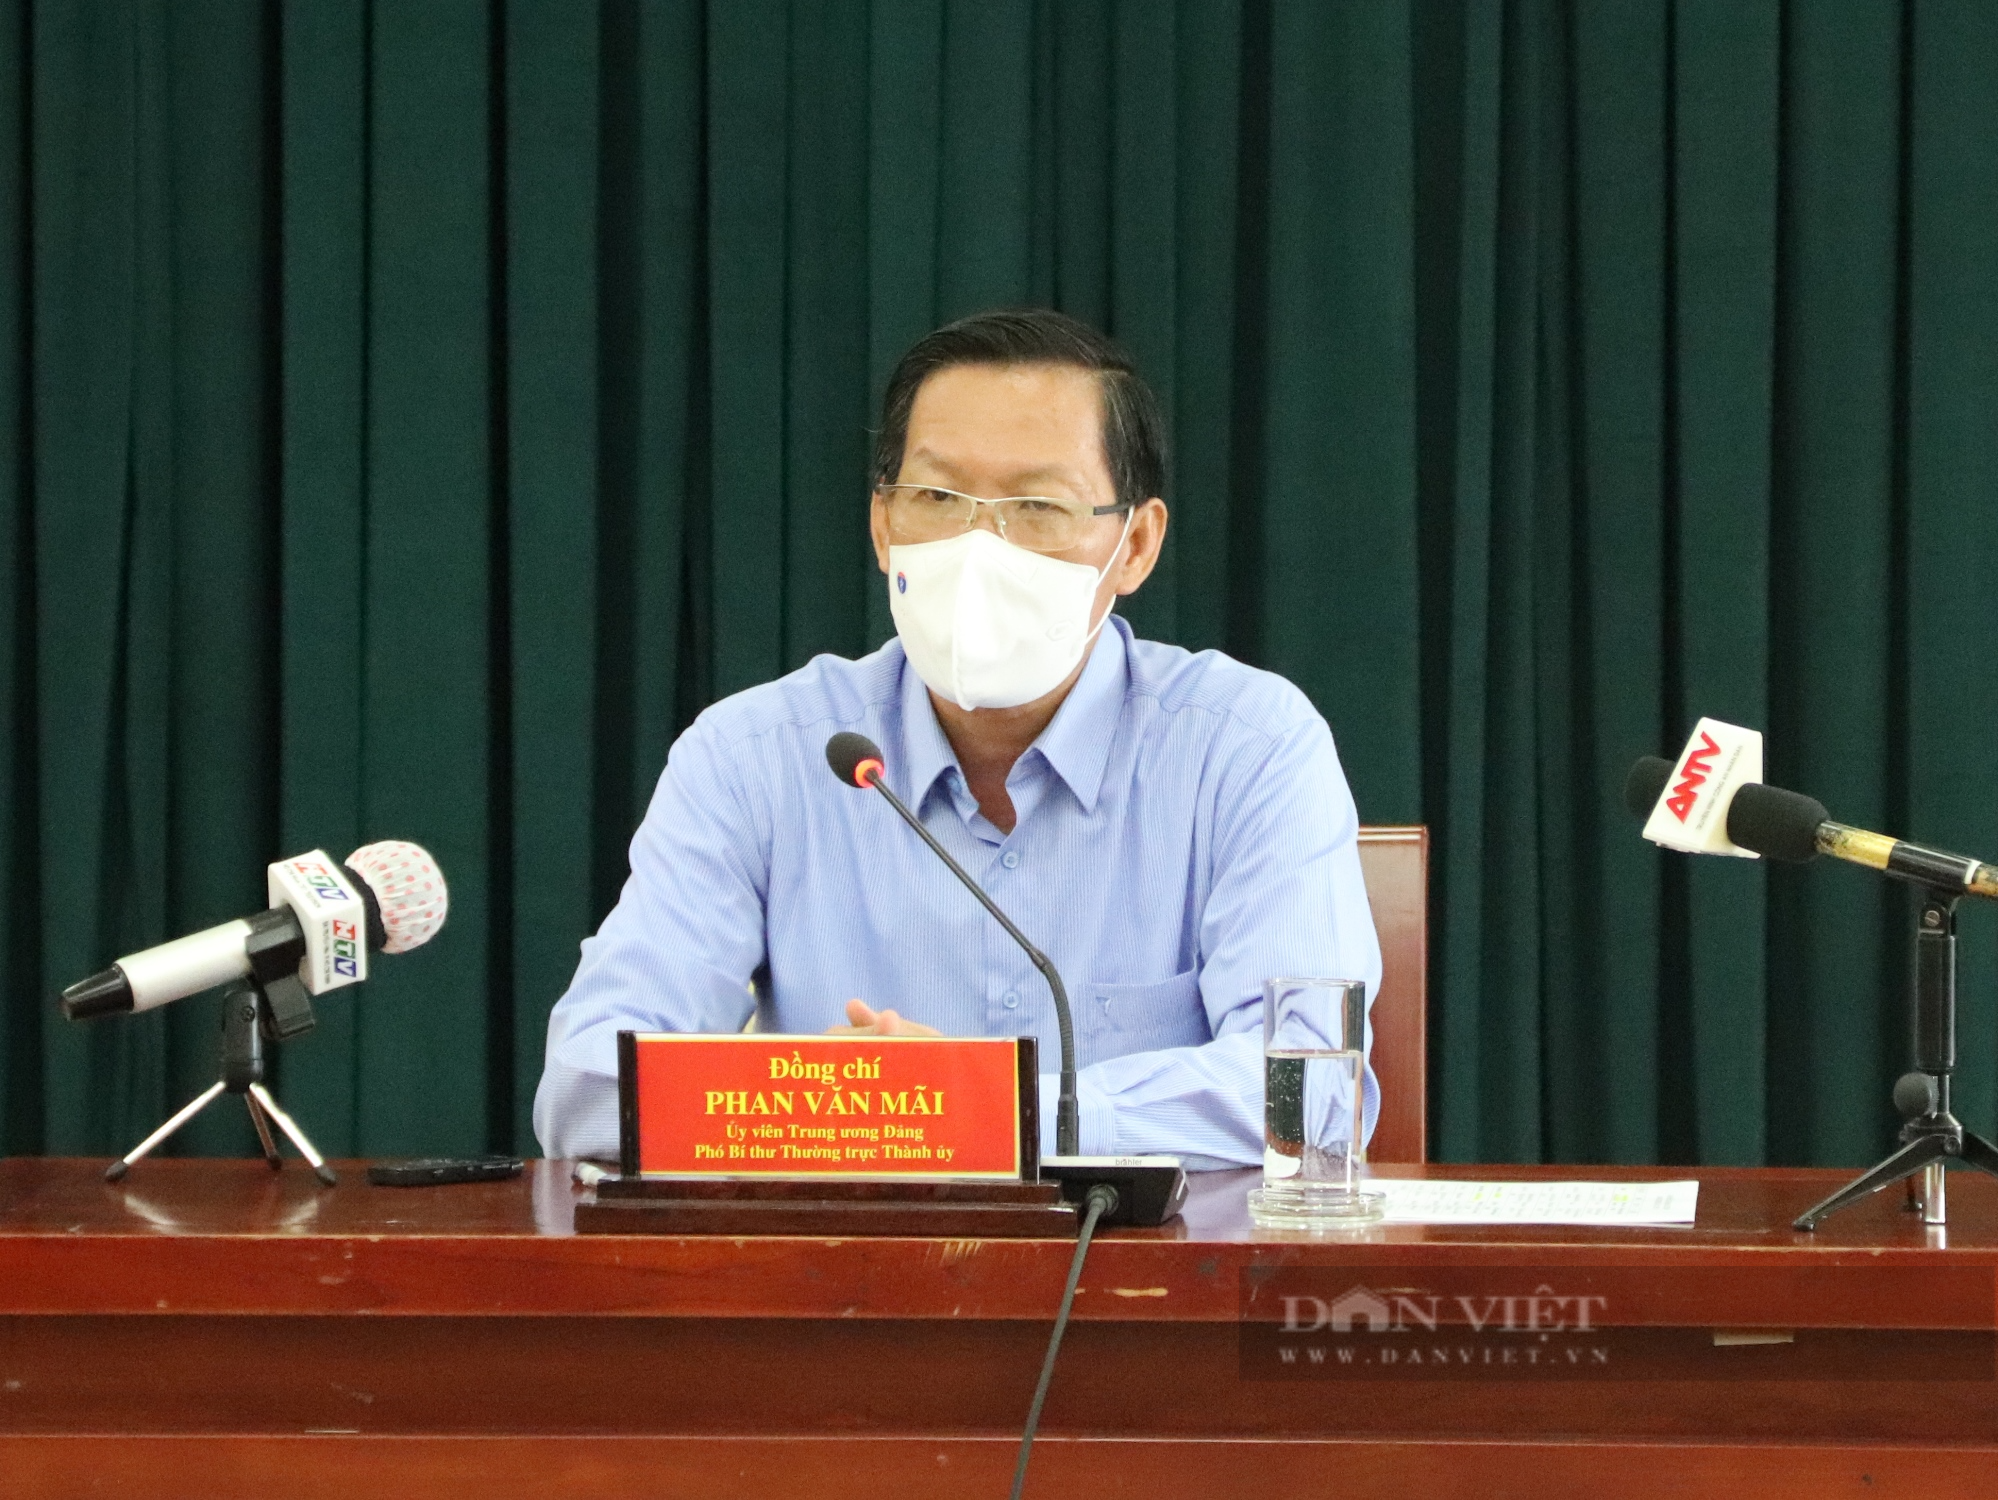 Phó Bí thư TP.HCM Phan Văn Mãi: Cấp phát 1 triệu túi an sinh ngay trong tuần này - Ảnh 1.